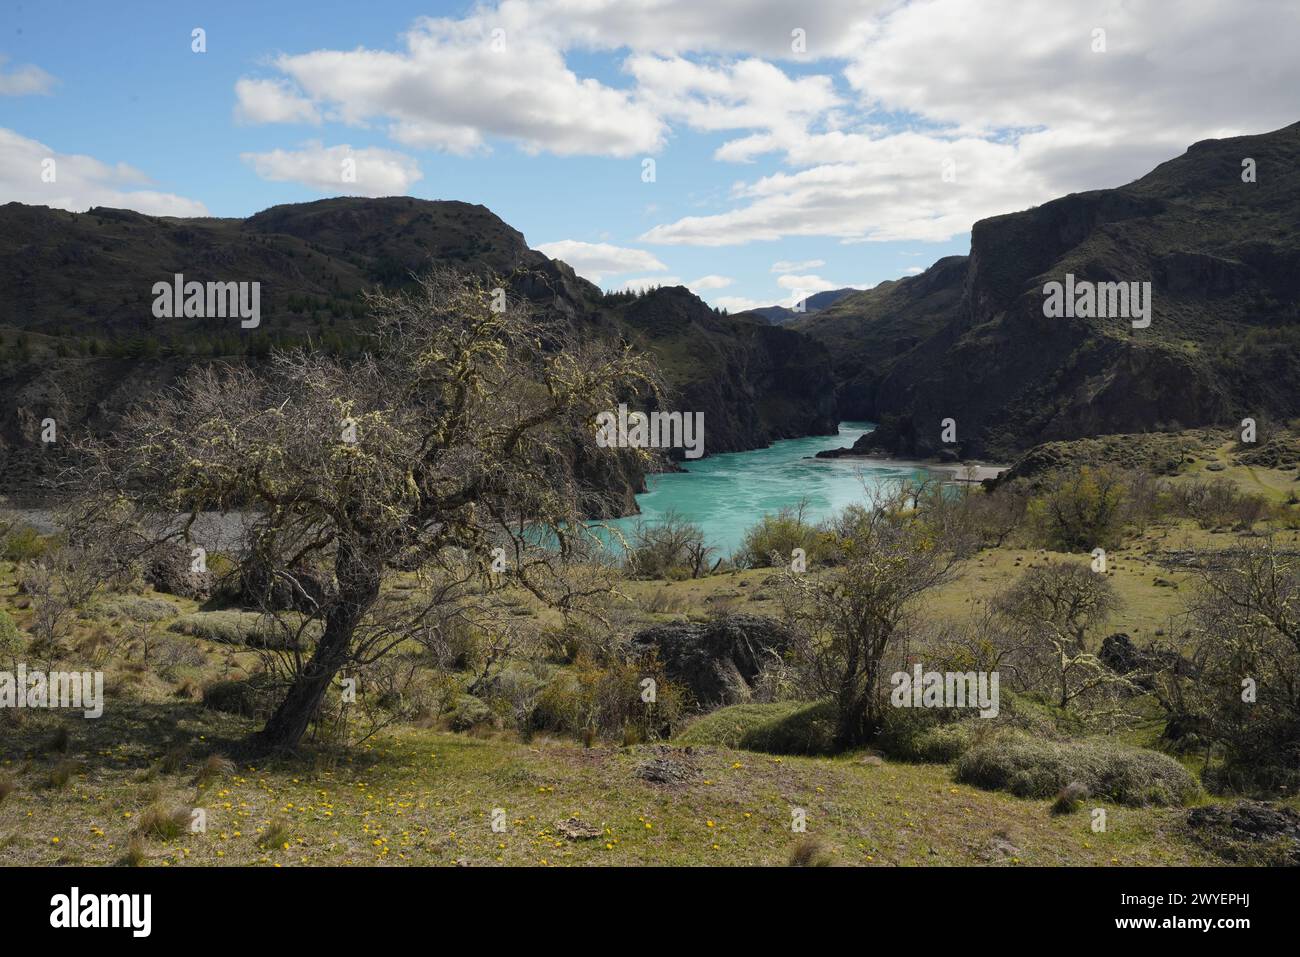 Ein malerischer Blick auf einen Fluss in einem grünen Tal in Chile Stockfoto